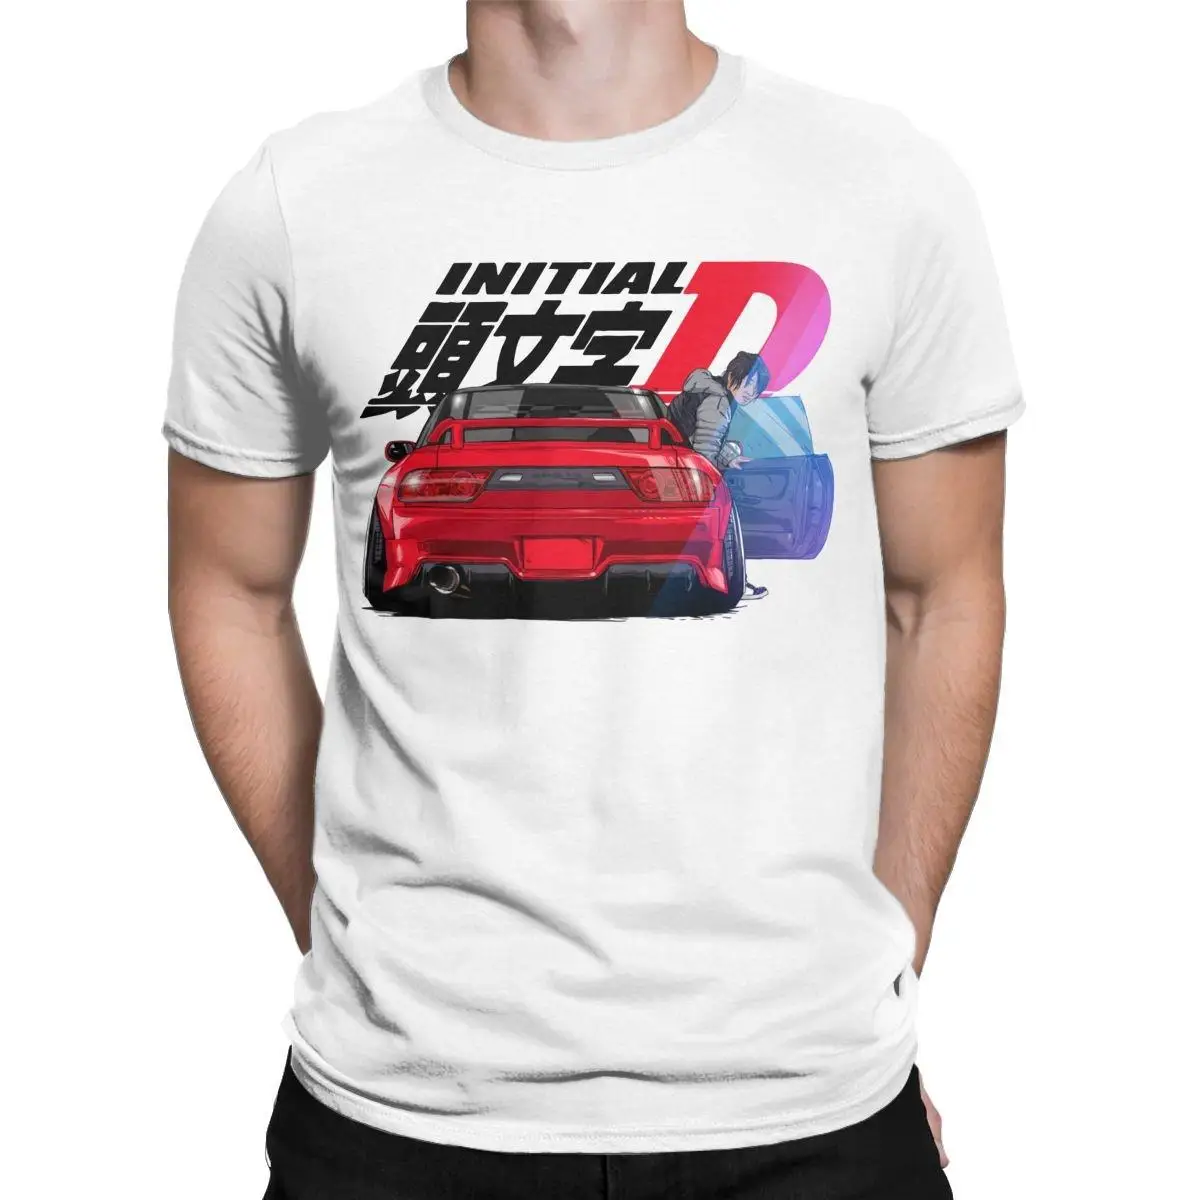 

Футболка Initial D мужская оверсайз, винтажная тенниска из чистого хлопка с рисунком автомобиля и гоночного дрифта